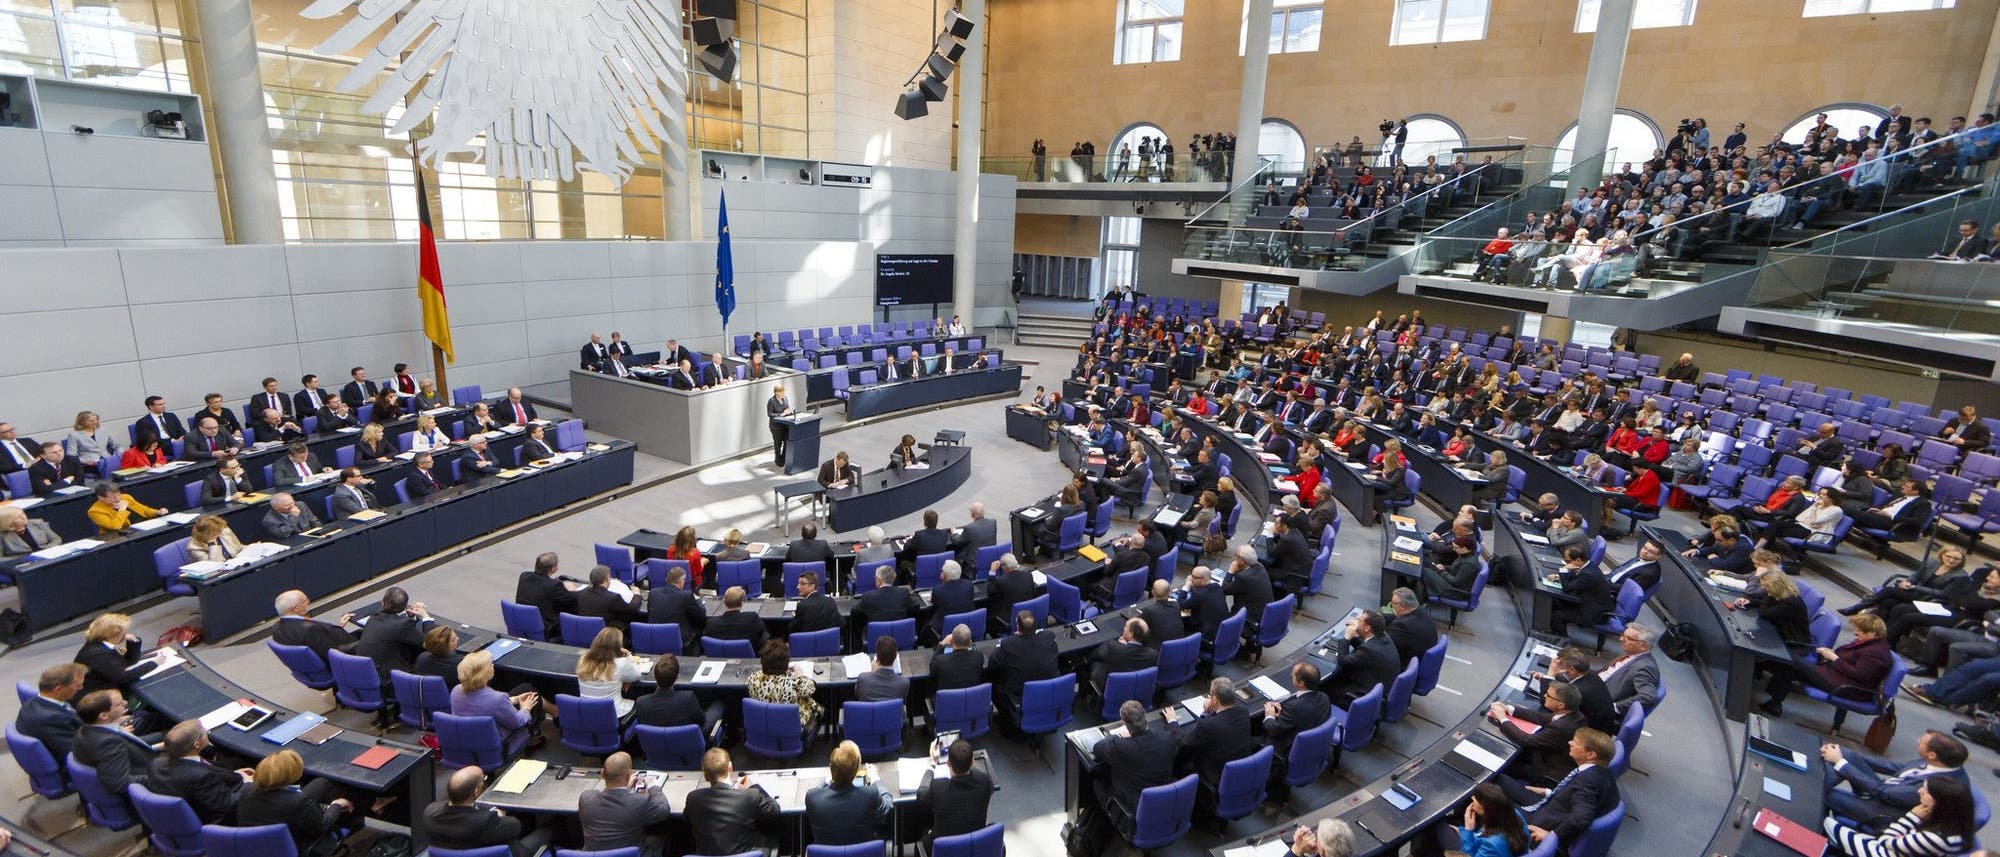 Totale aus dem Hintergrund auf den Bundestag, während die Bundeskanzlerin eine Regierungserklärung abgibt.